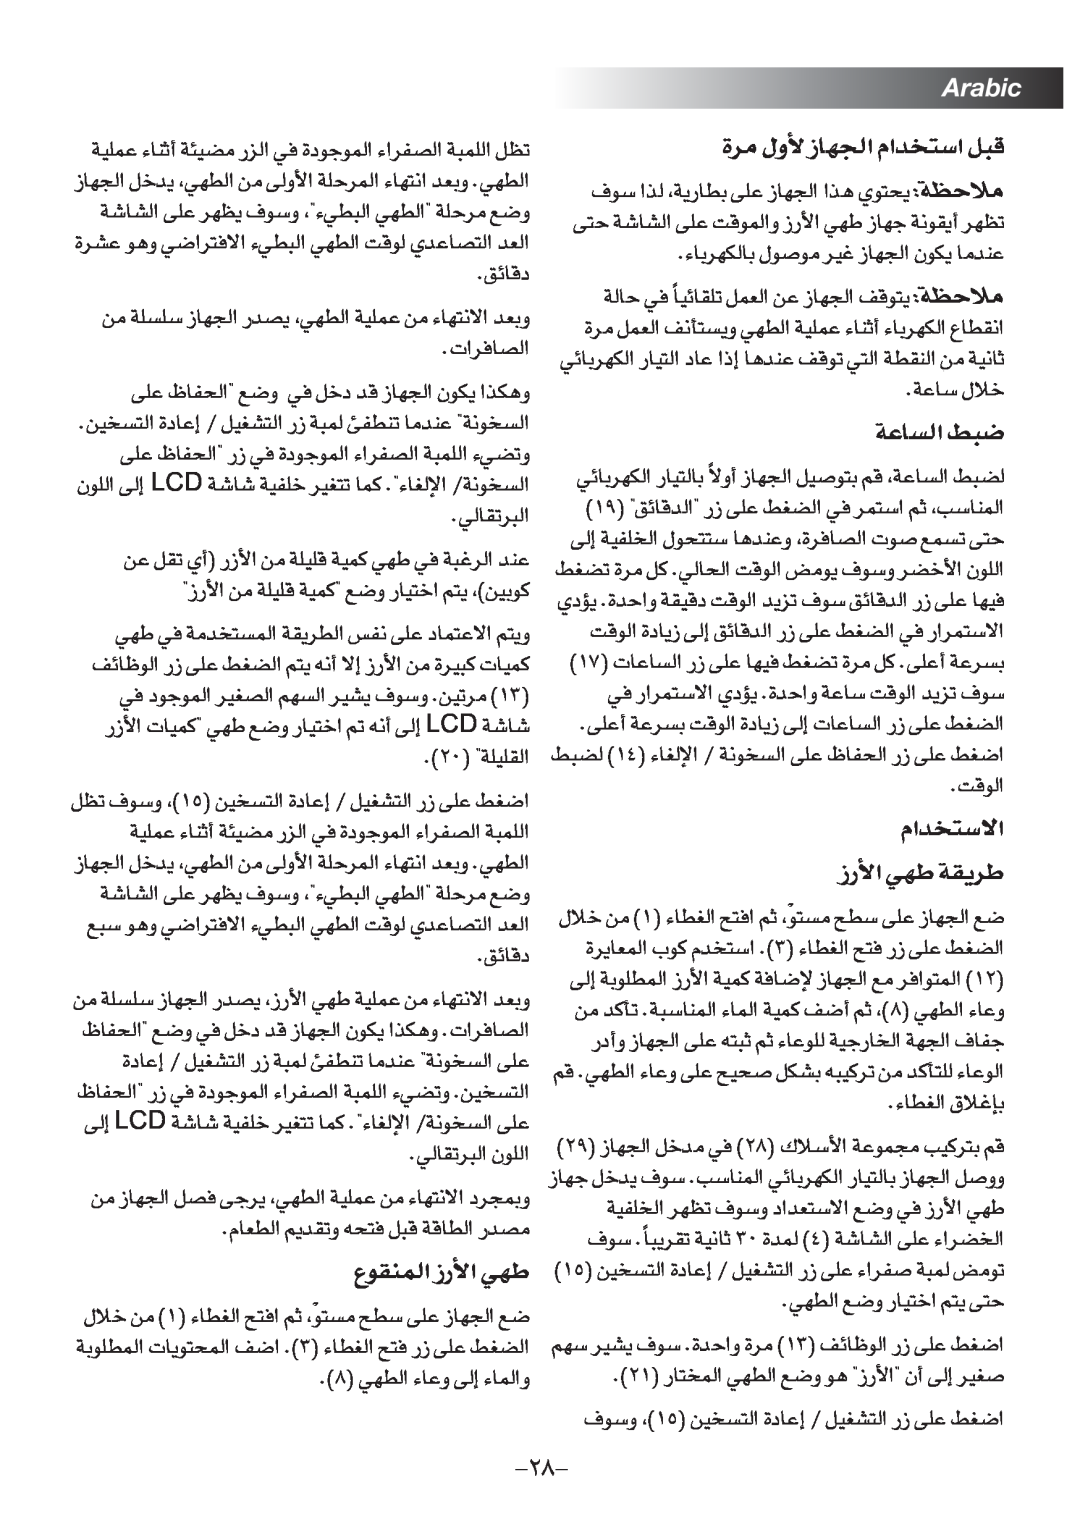 Black & Decker RC75 manual Arabic, …±d Ë‰ NU“∞π« ªb«Â∑«ß q∂Æ, ªb«Â∑«ôß ¸“ « Nw d¥IW, LMIuŸ∞« ¸“ « Nw 